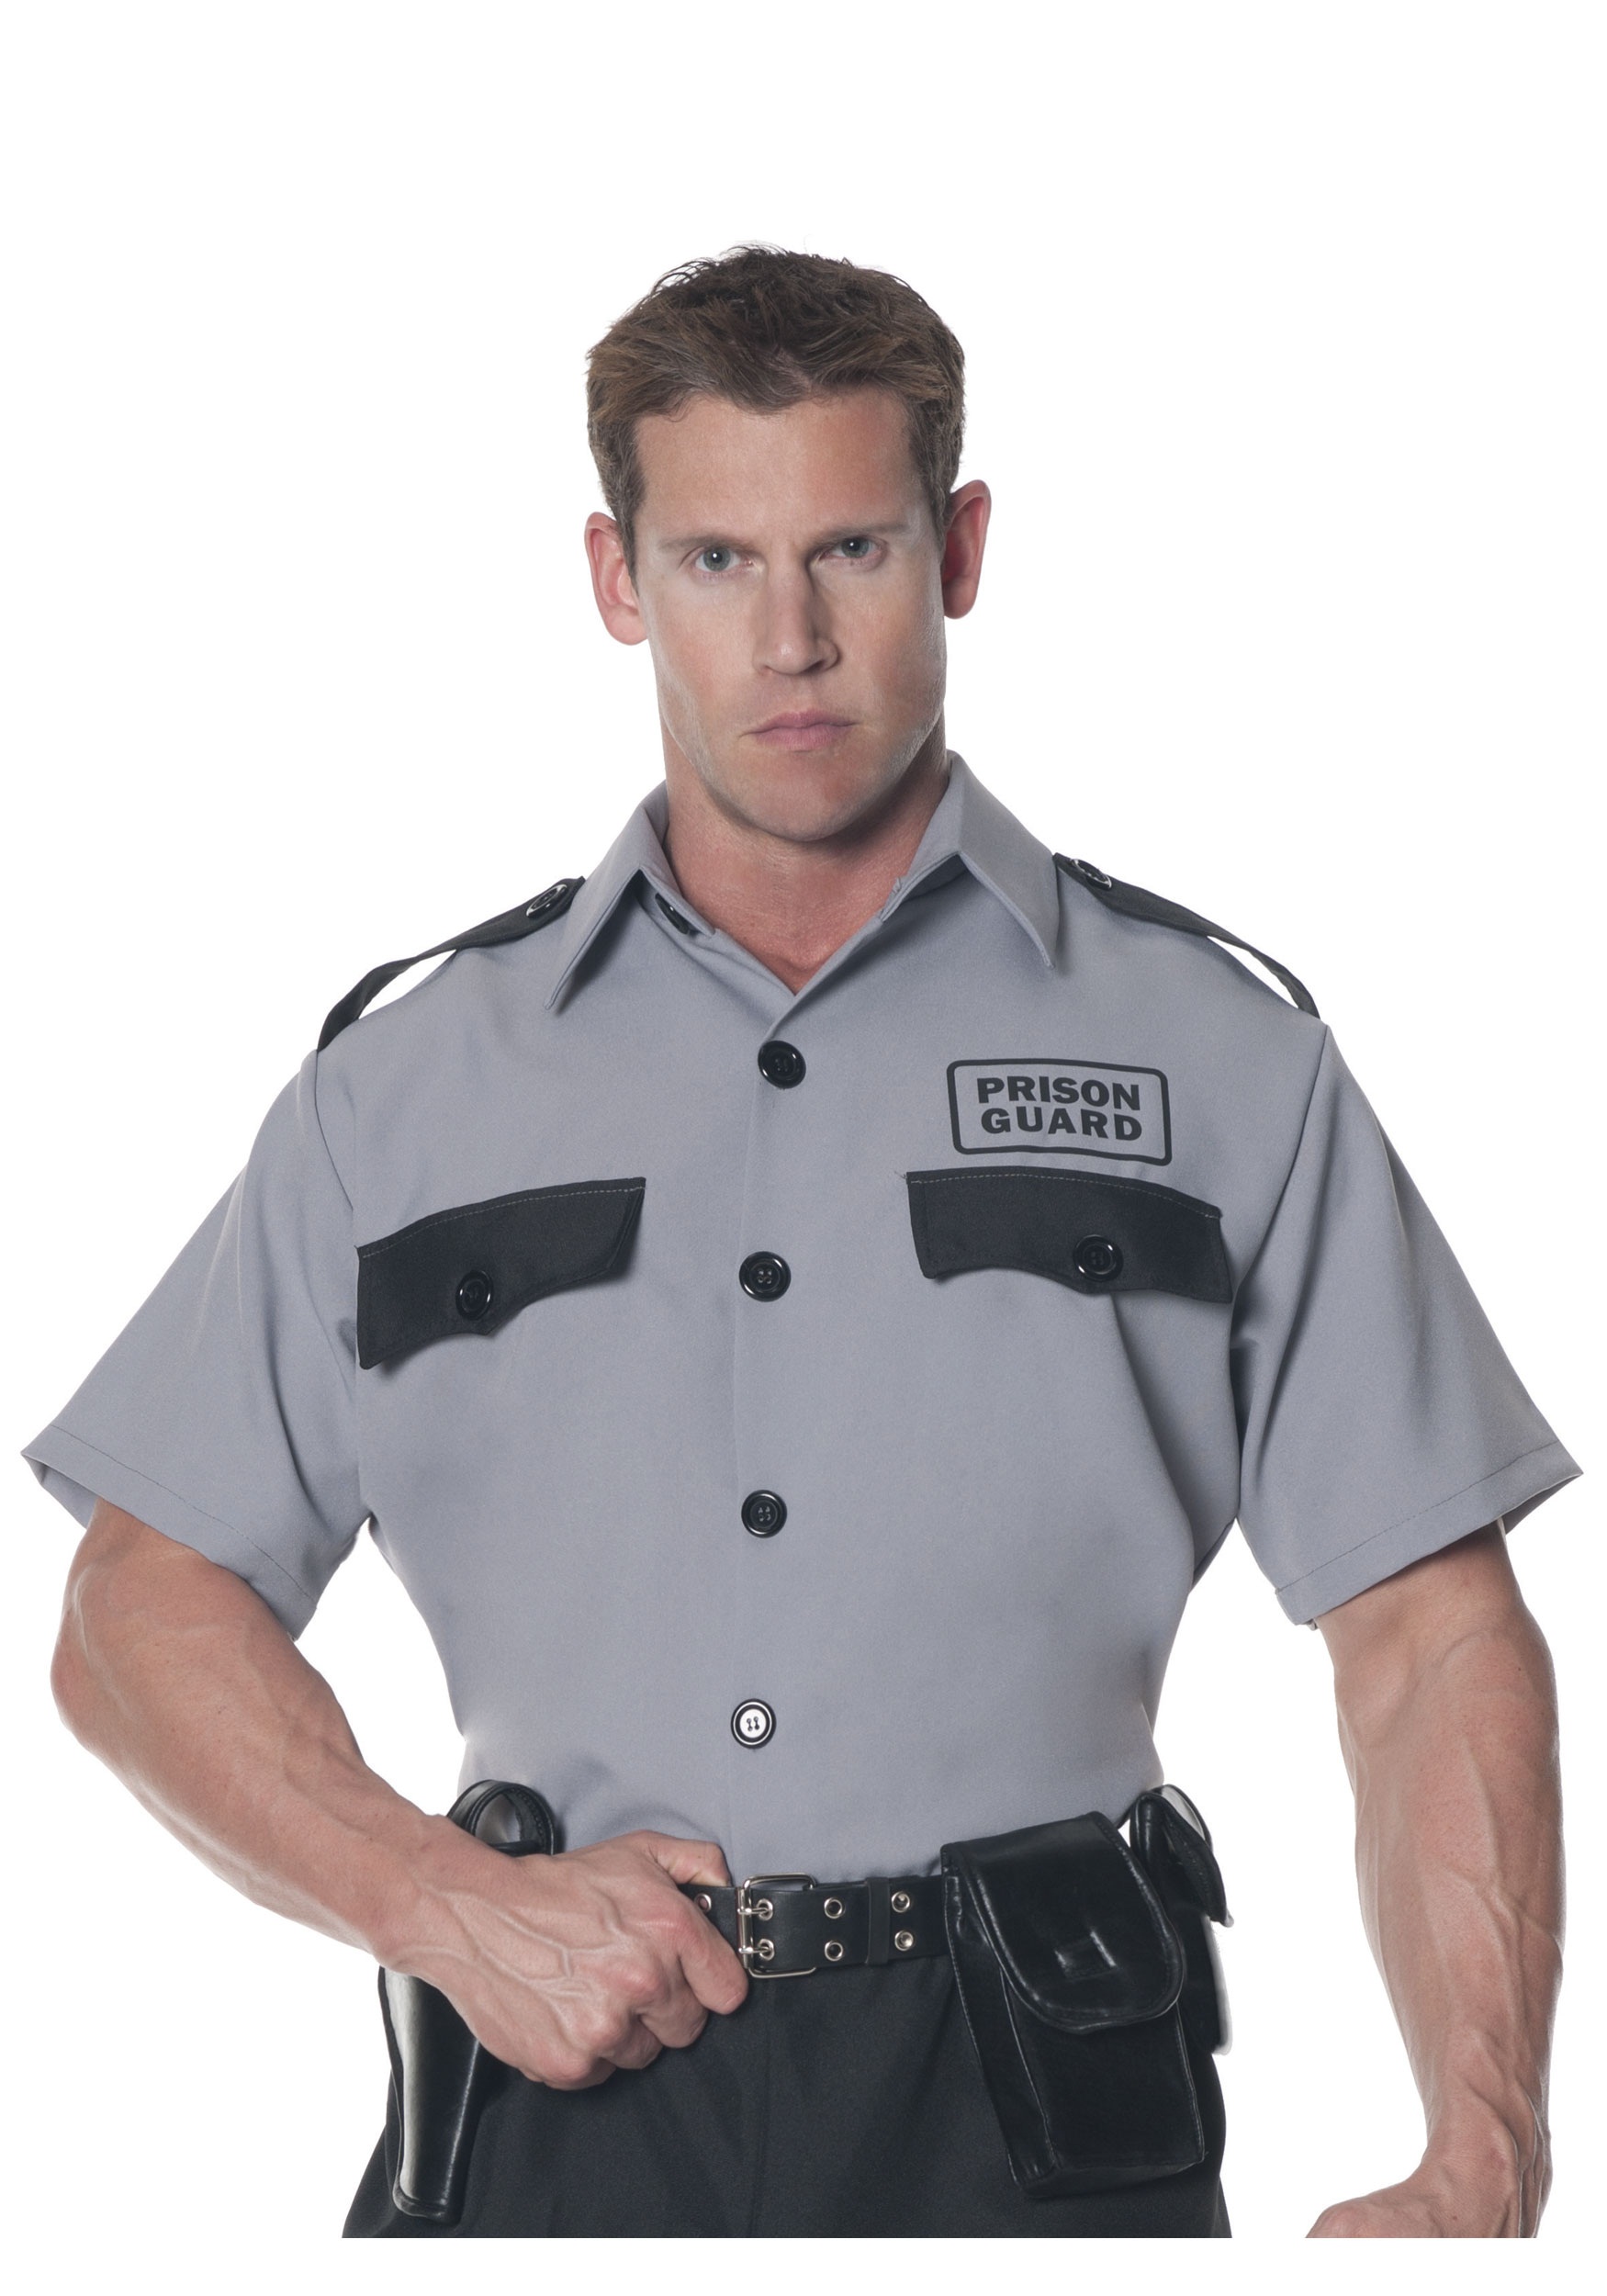 Prison Guard Uniform